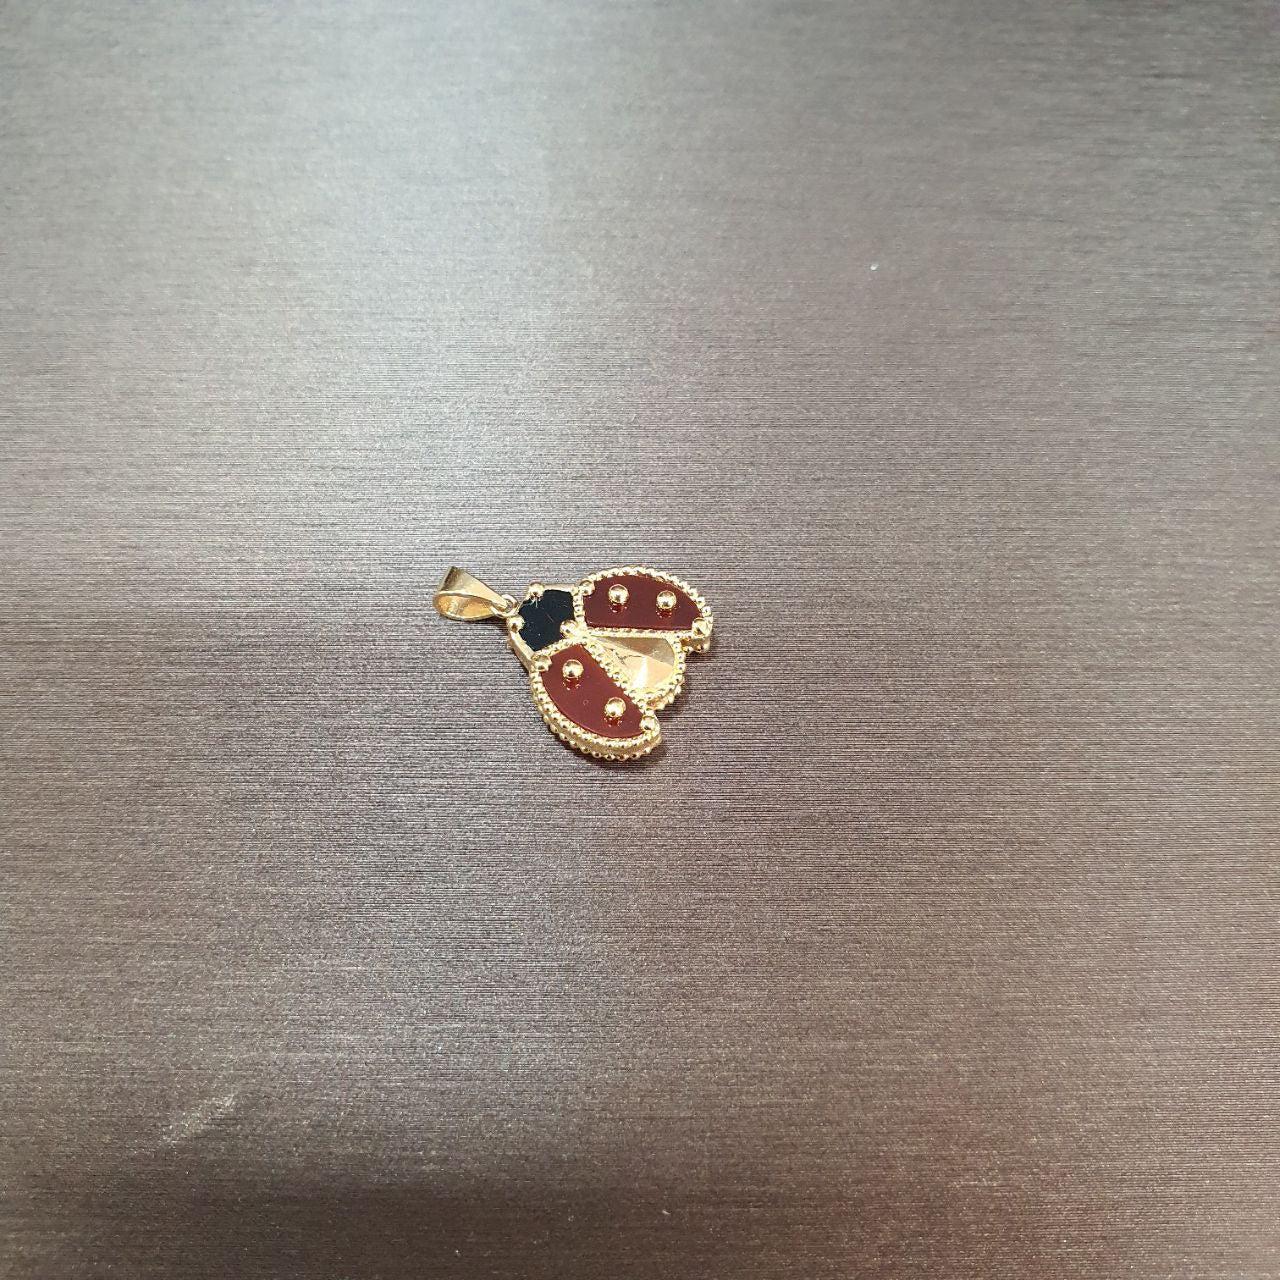 22k / 916 Gold Lady Bug Pendant-Charms & Pendants-Best Gold Shop